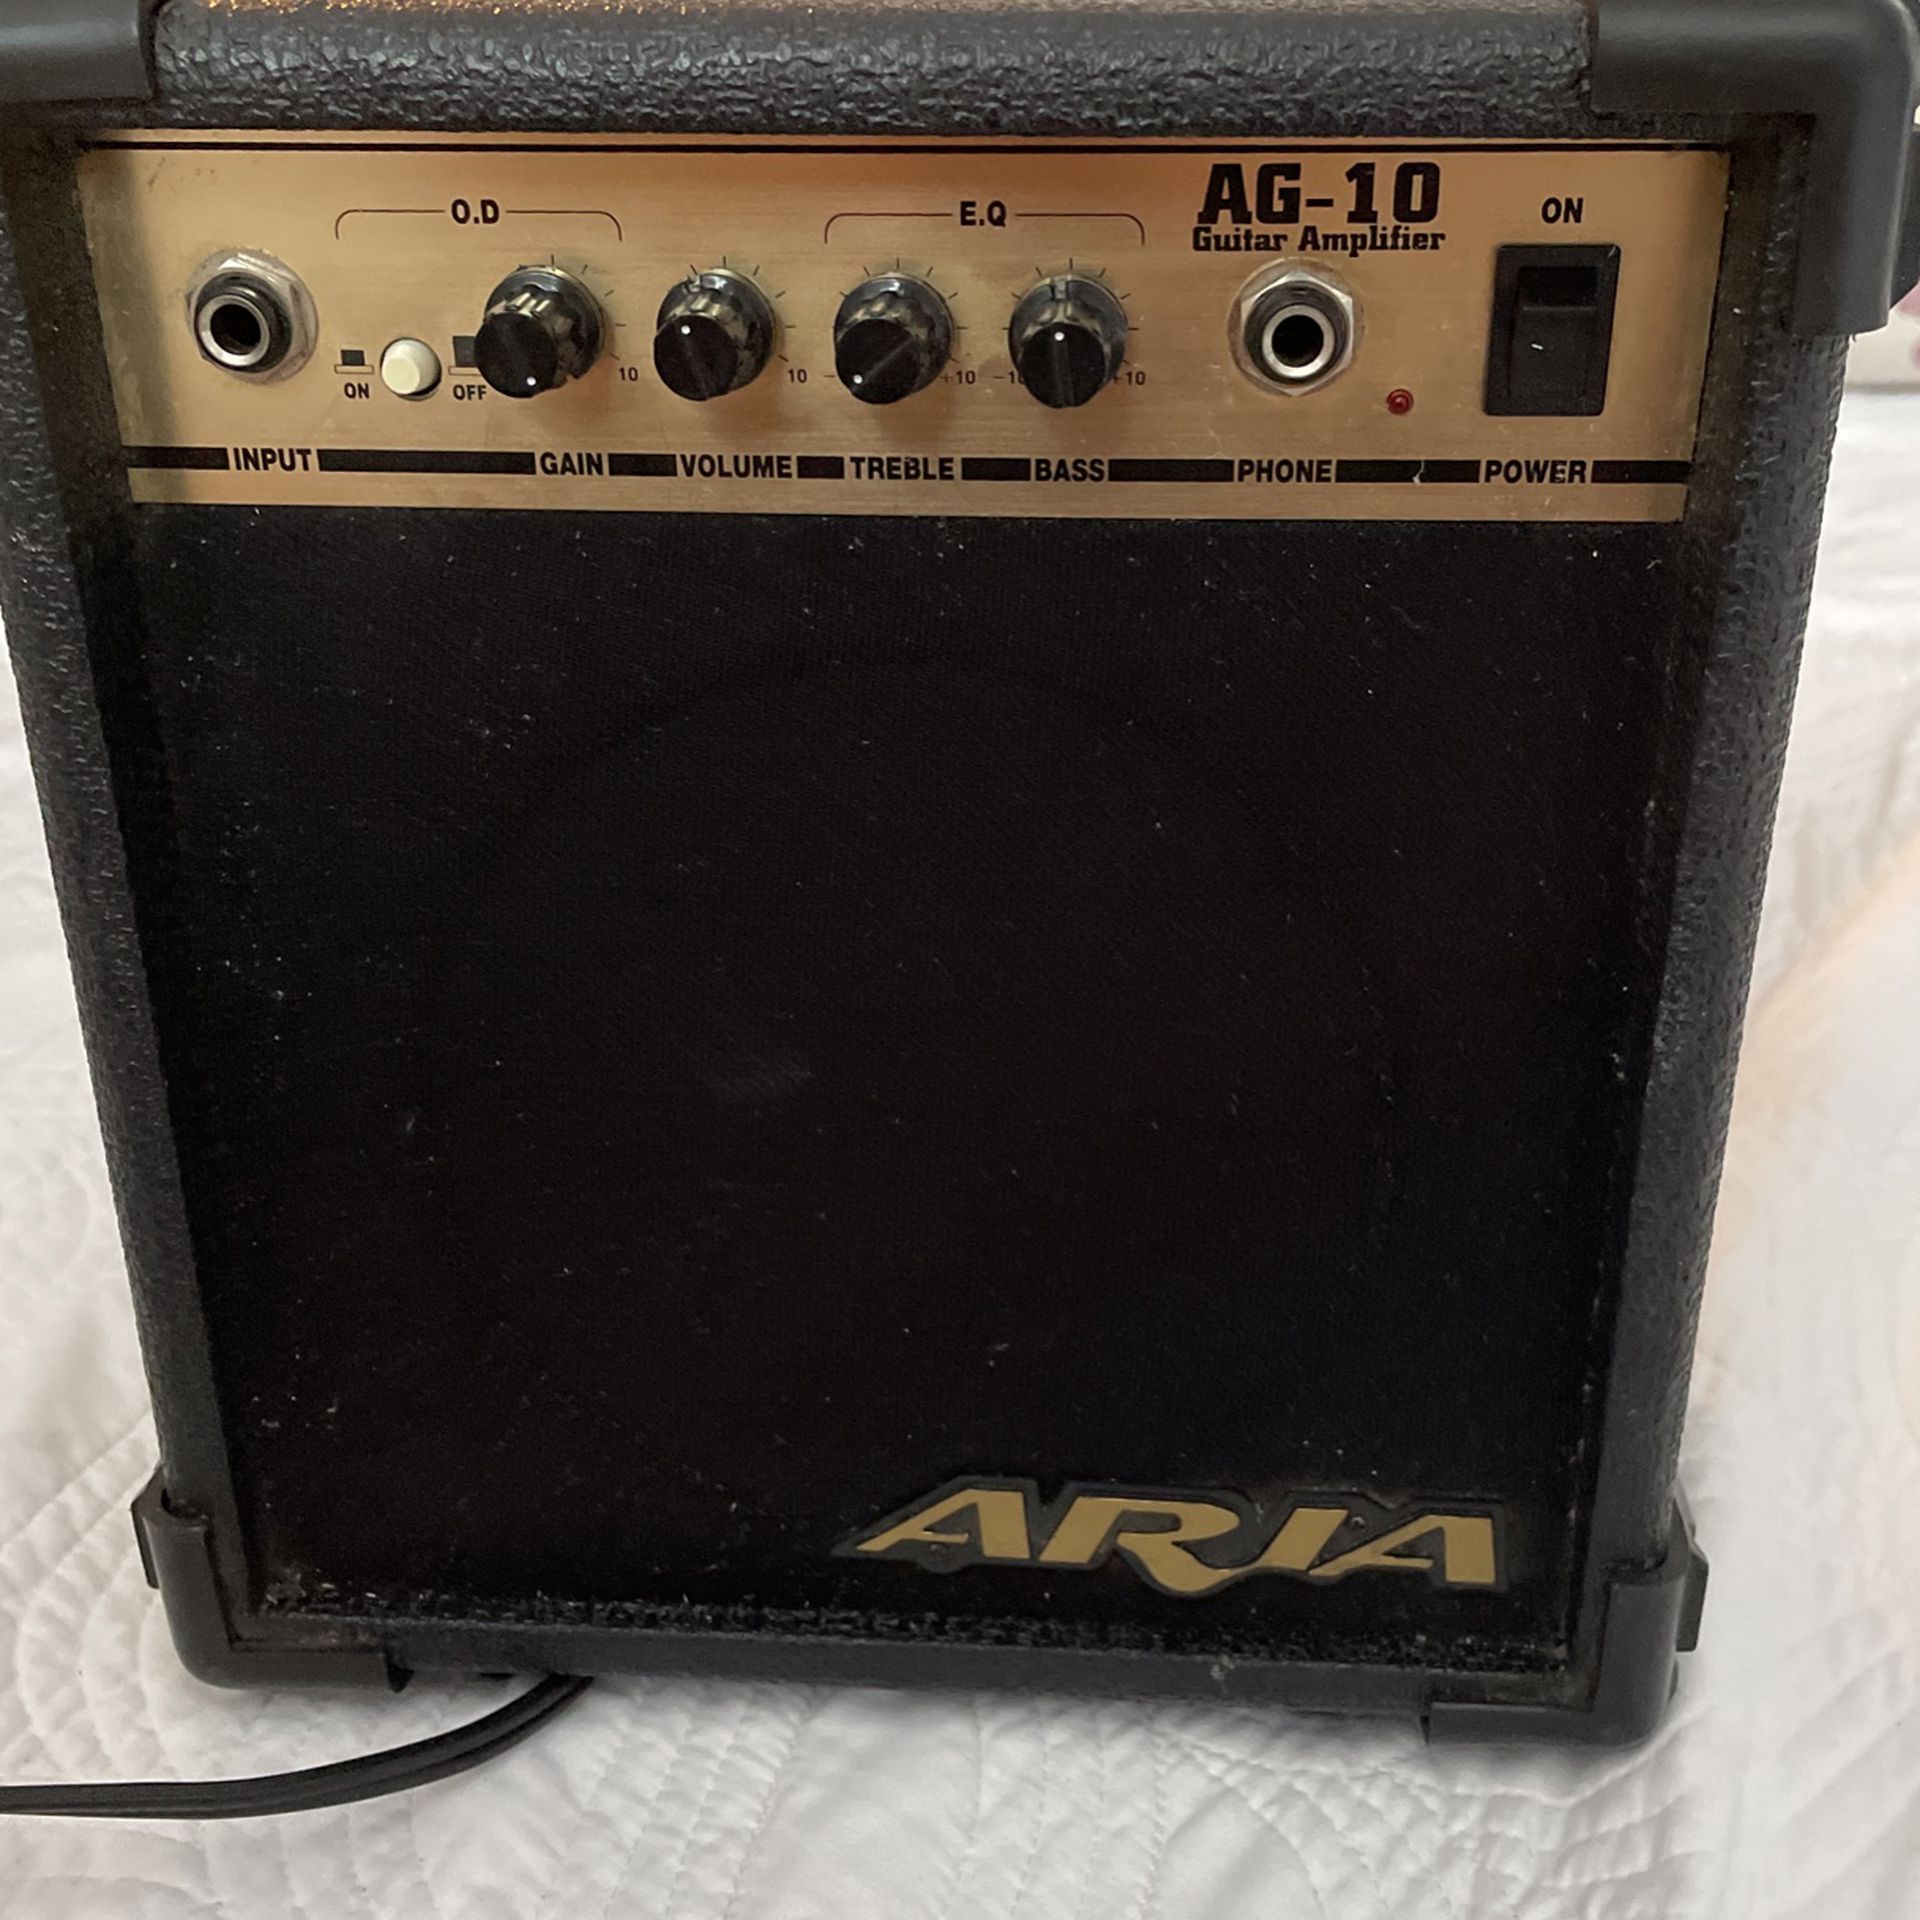 AG-10 Guitar Amplifier 